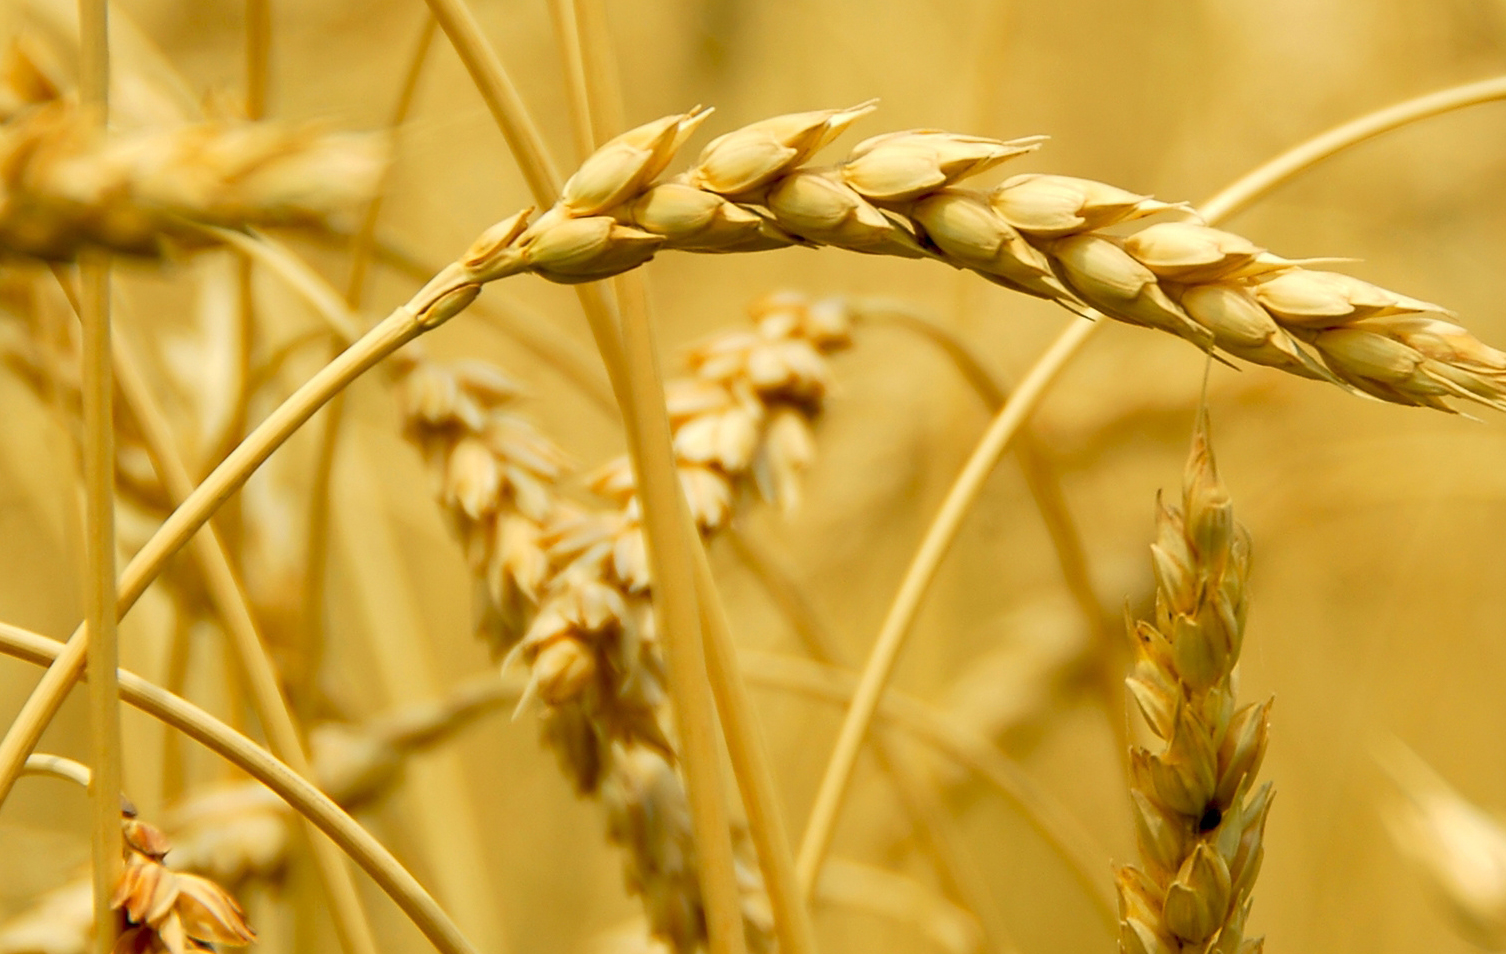 Le droit d’importation applicable au blé tendre passe à 35%